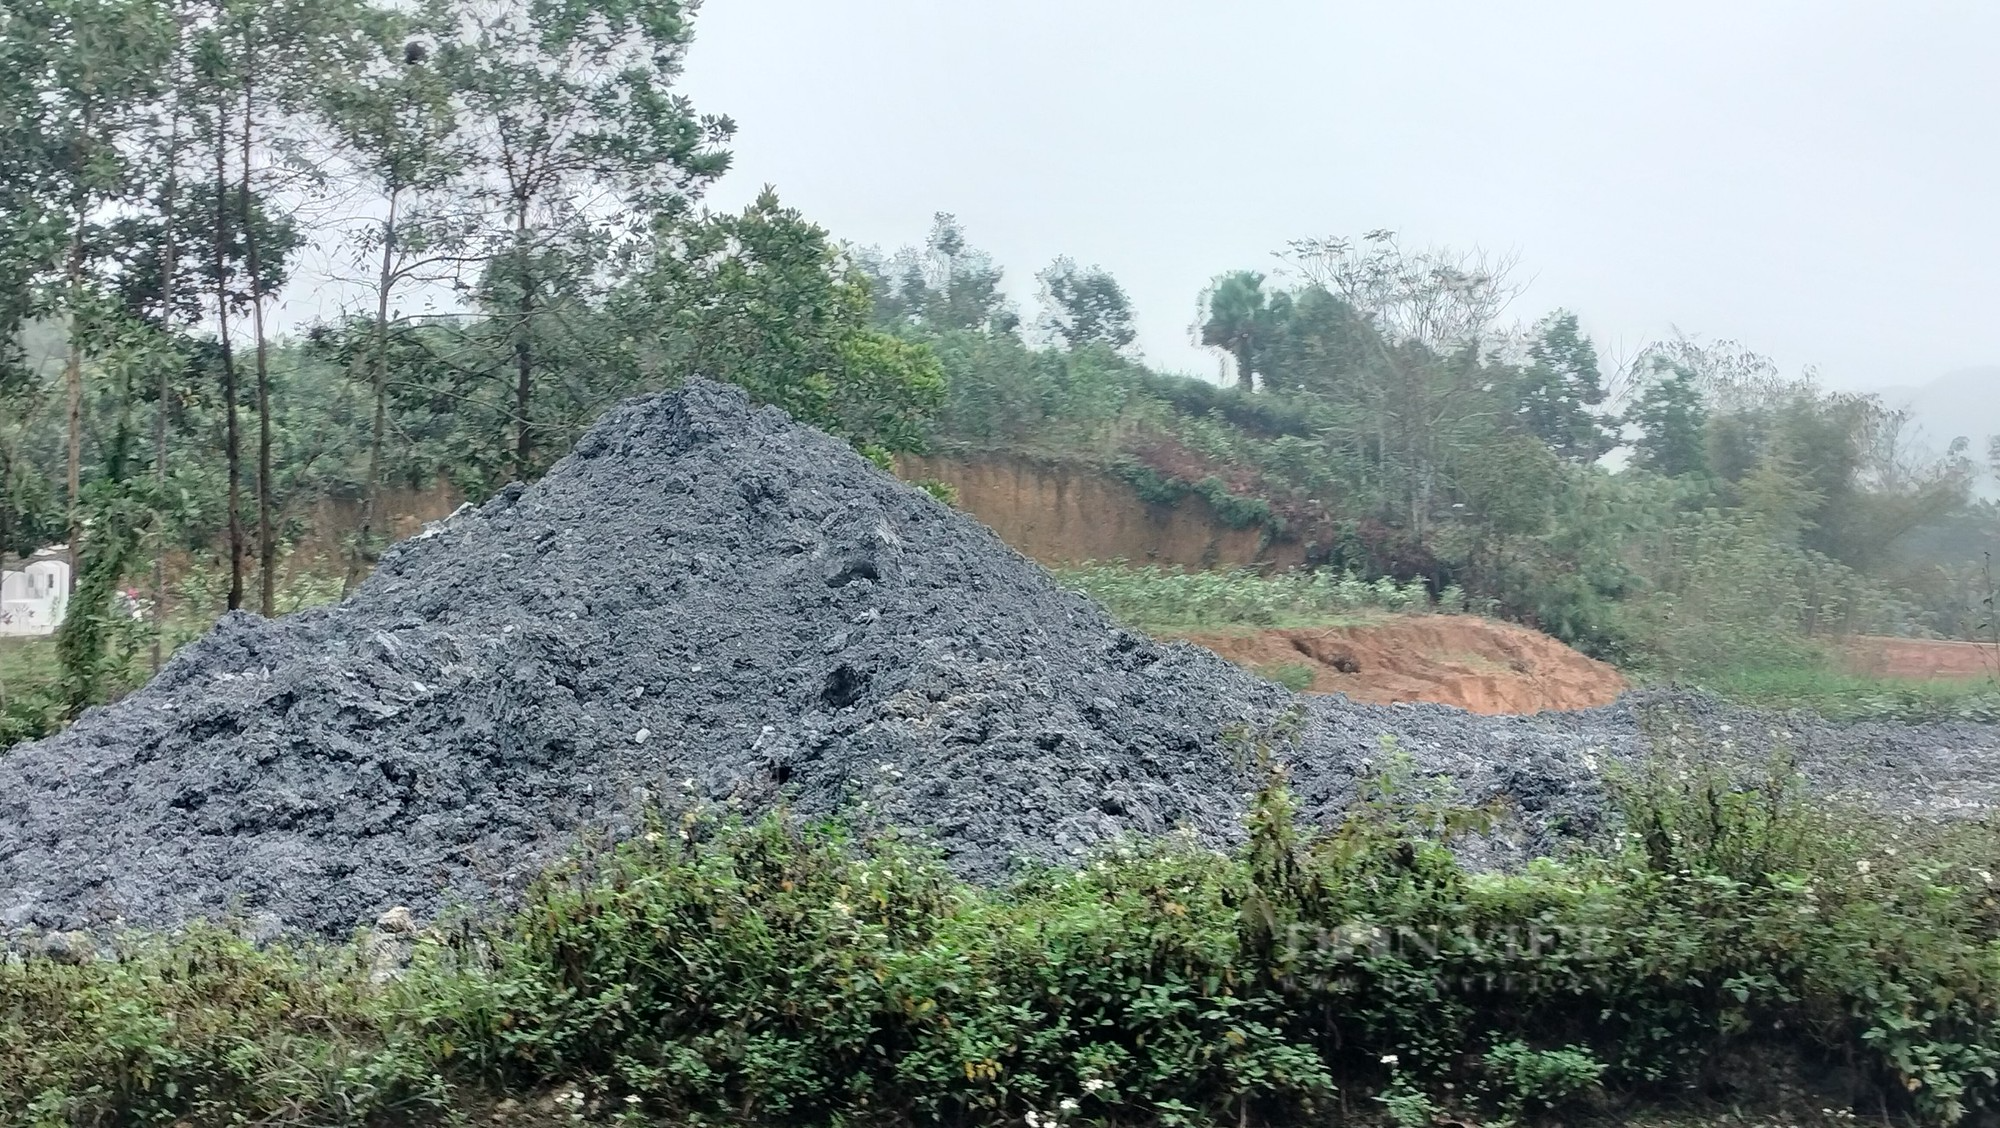 Khai thác khoáng sản trái phép tại Vân Hội: Chủ đất bị phạt 25 triệu đồng - Ảnh 4.